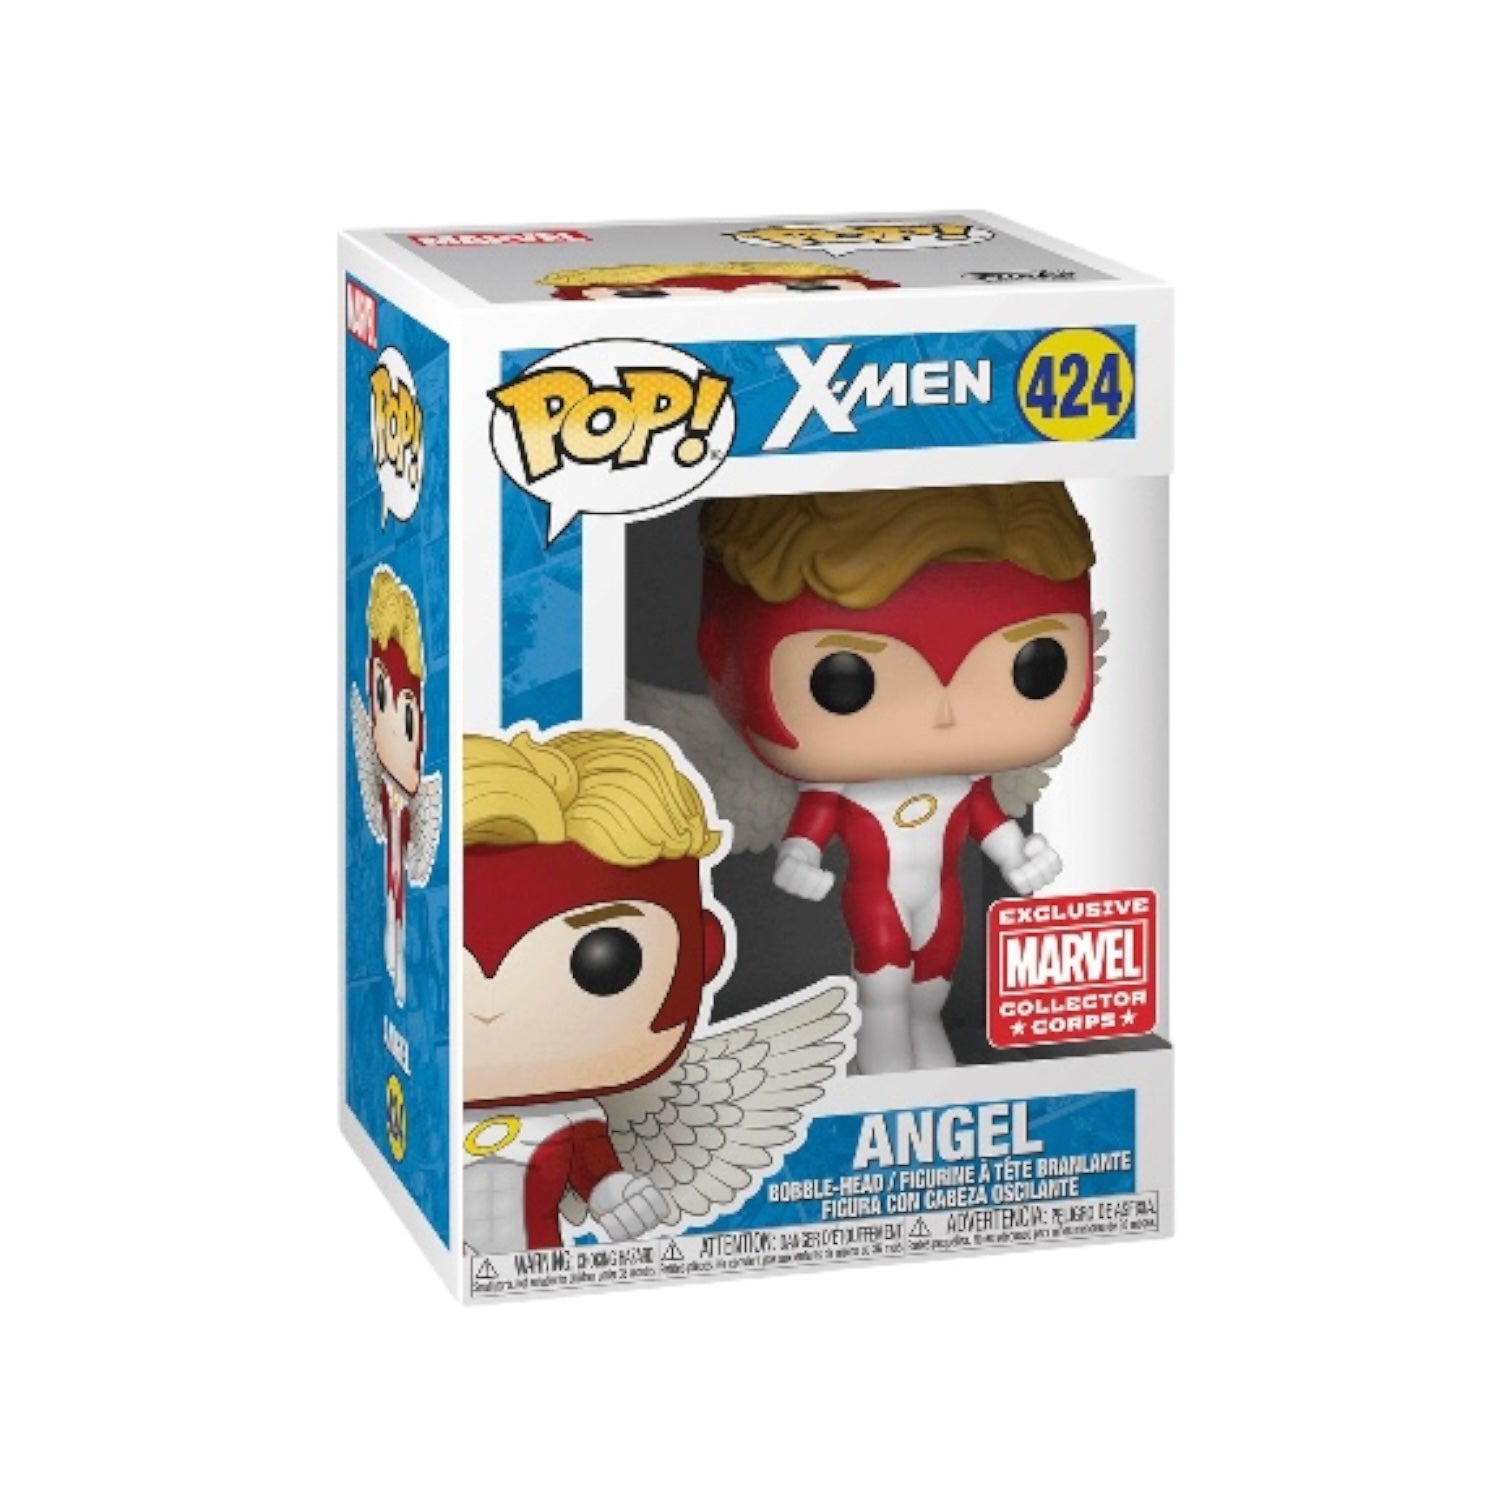 Angel (Bobble-Head) #424 - X-Men - Exclusive Marvel Collector Corps - 2018 Pop!